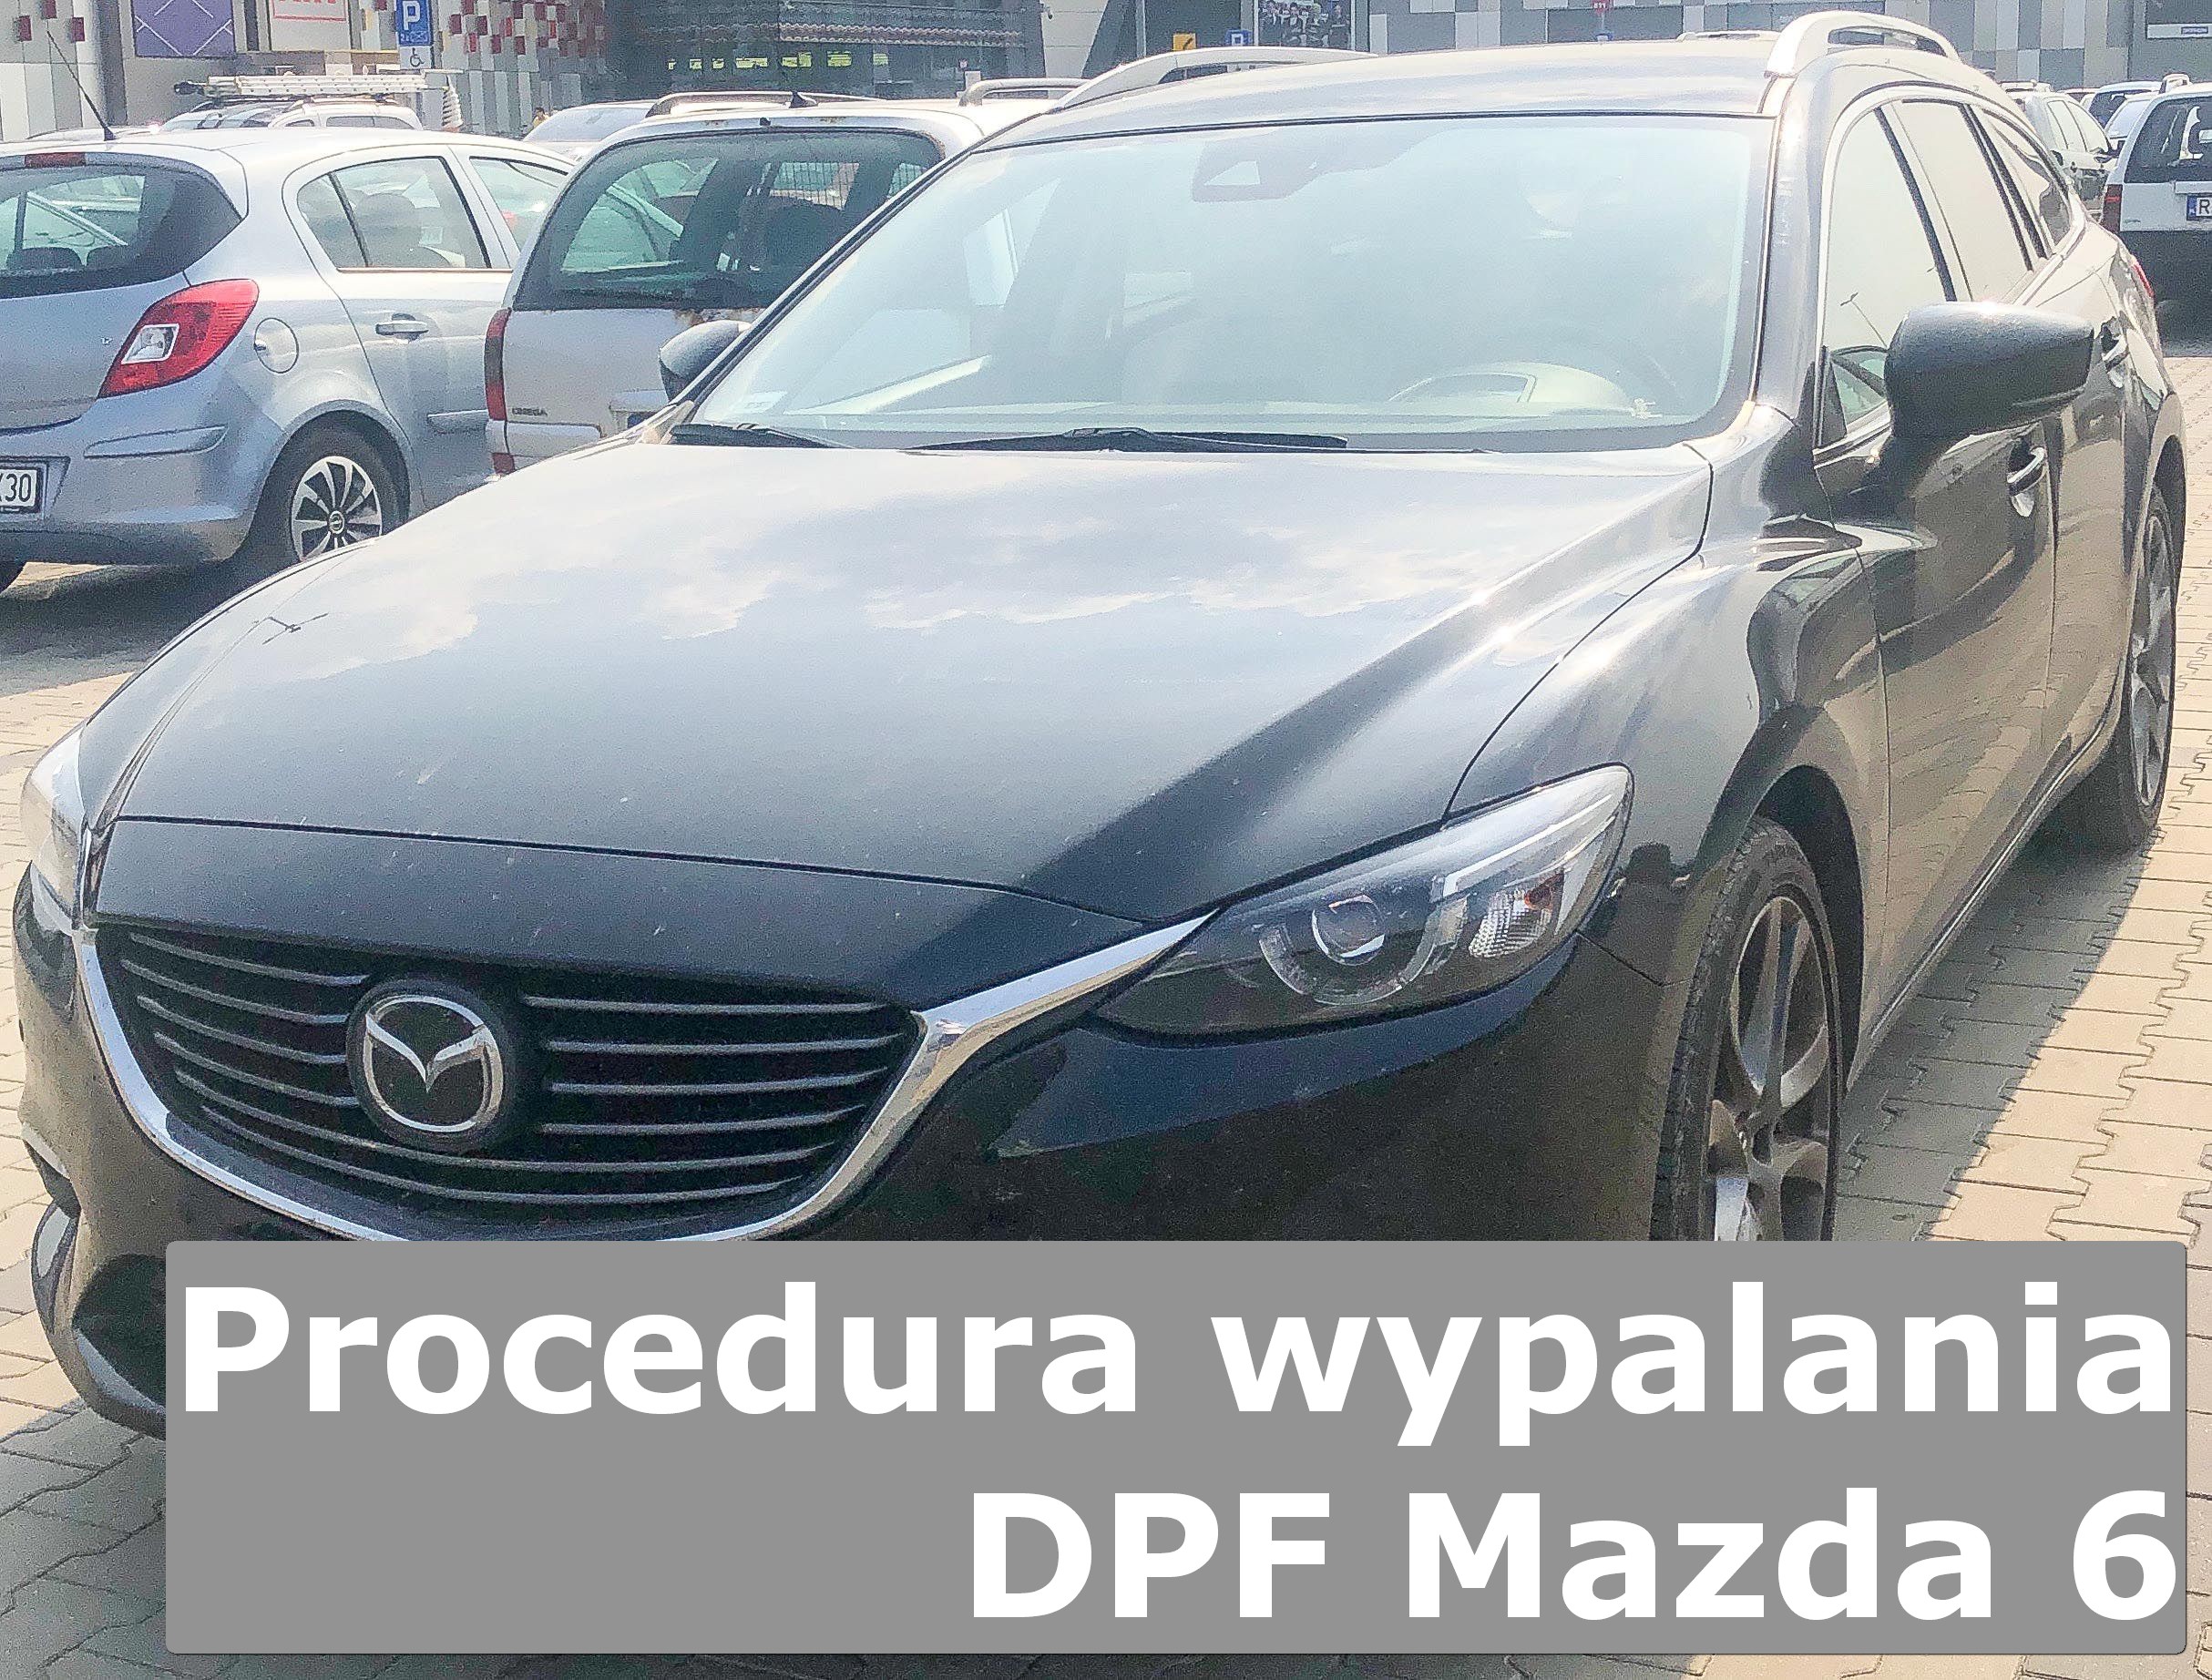 Wypalanie Dpf Mazda – Część 19